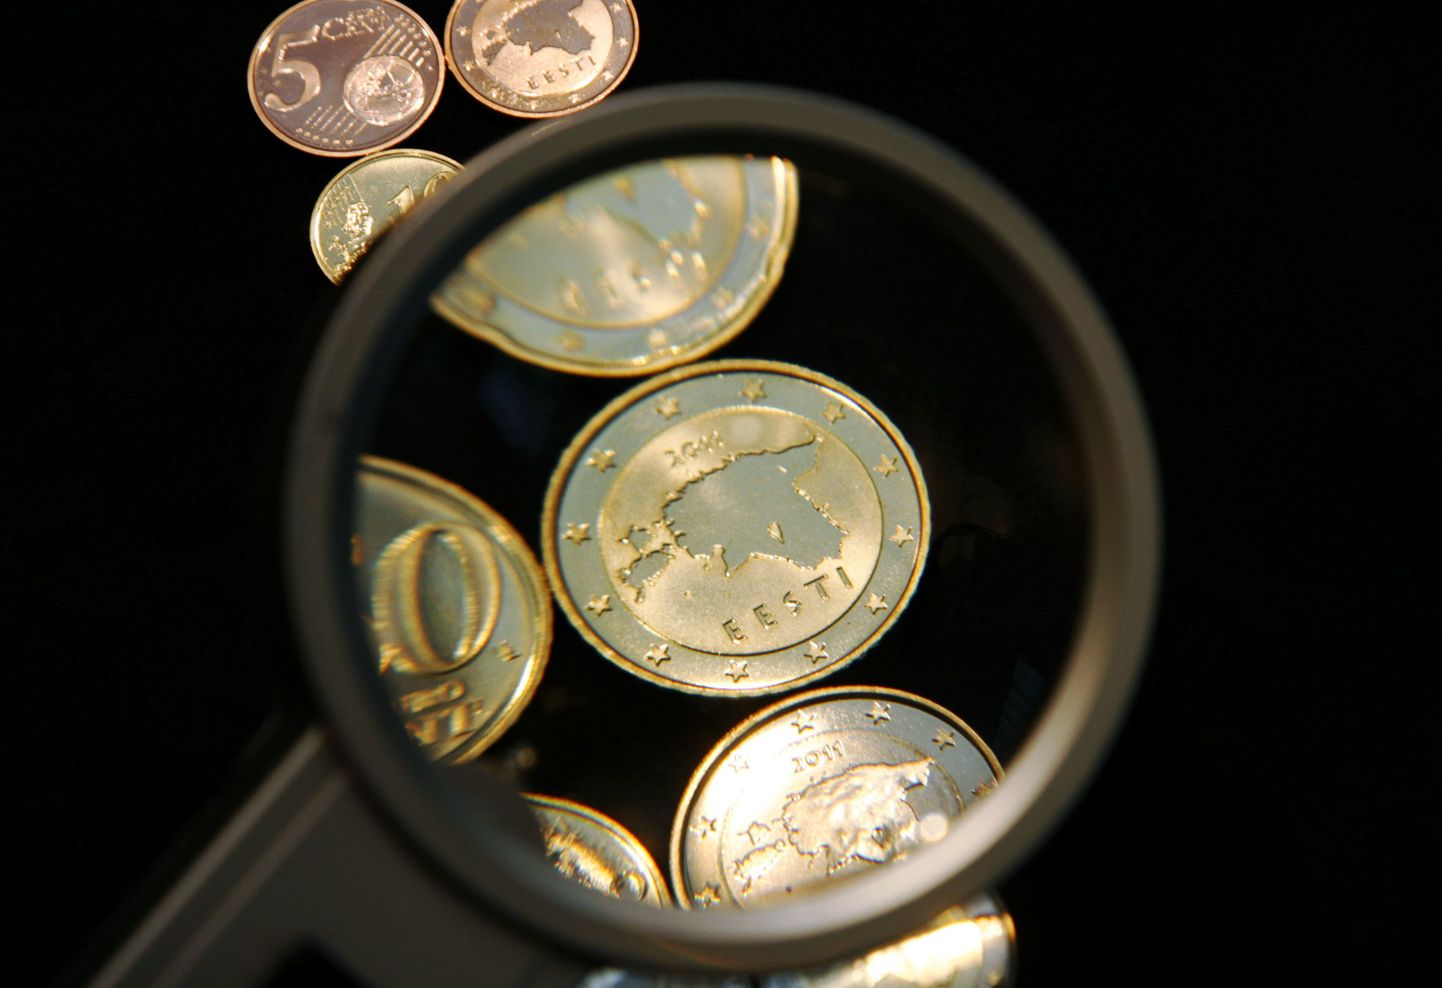 Eesti euromündid